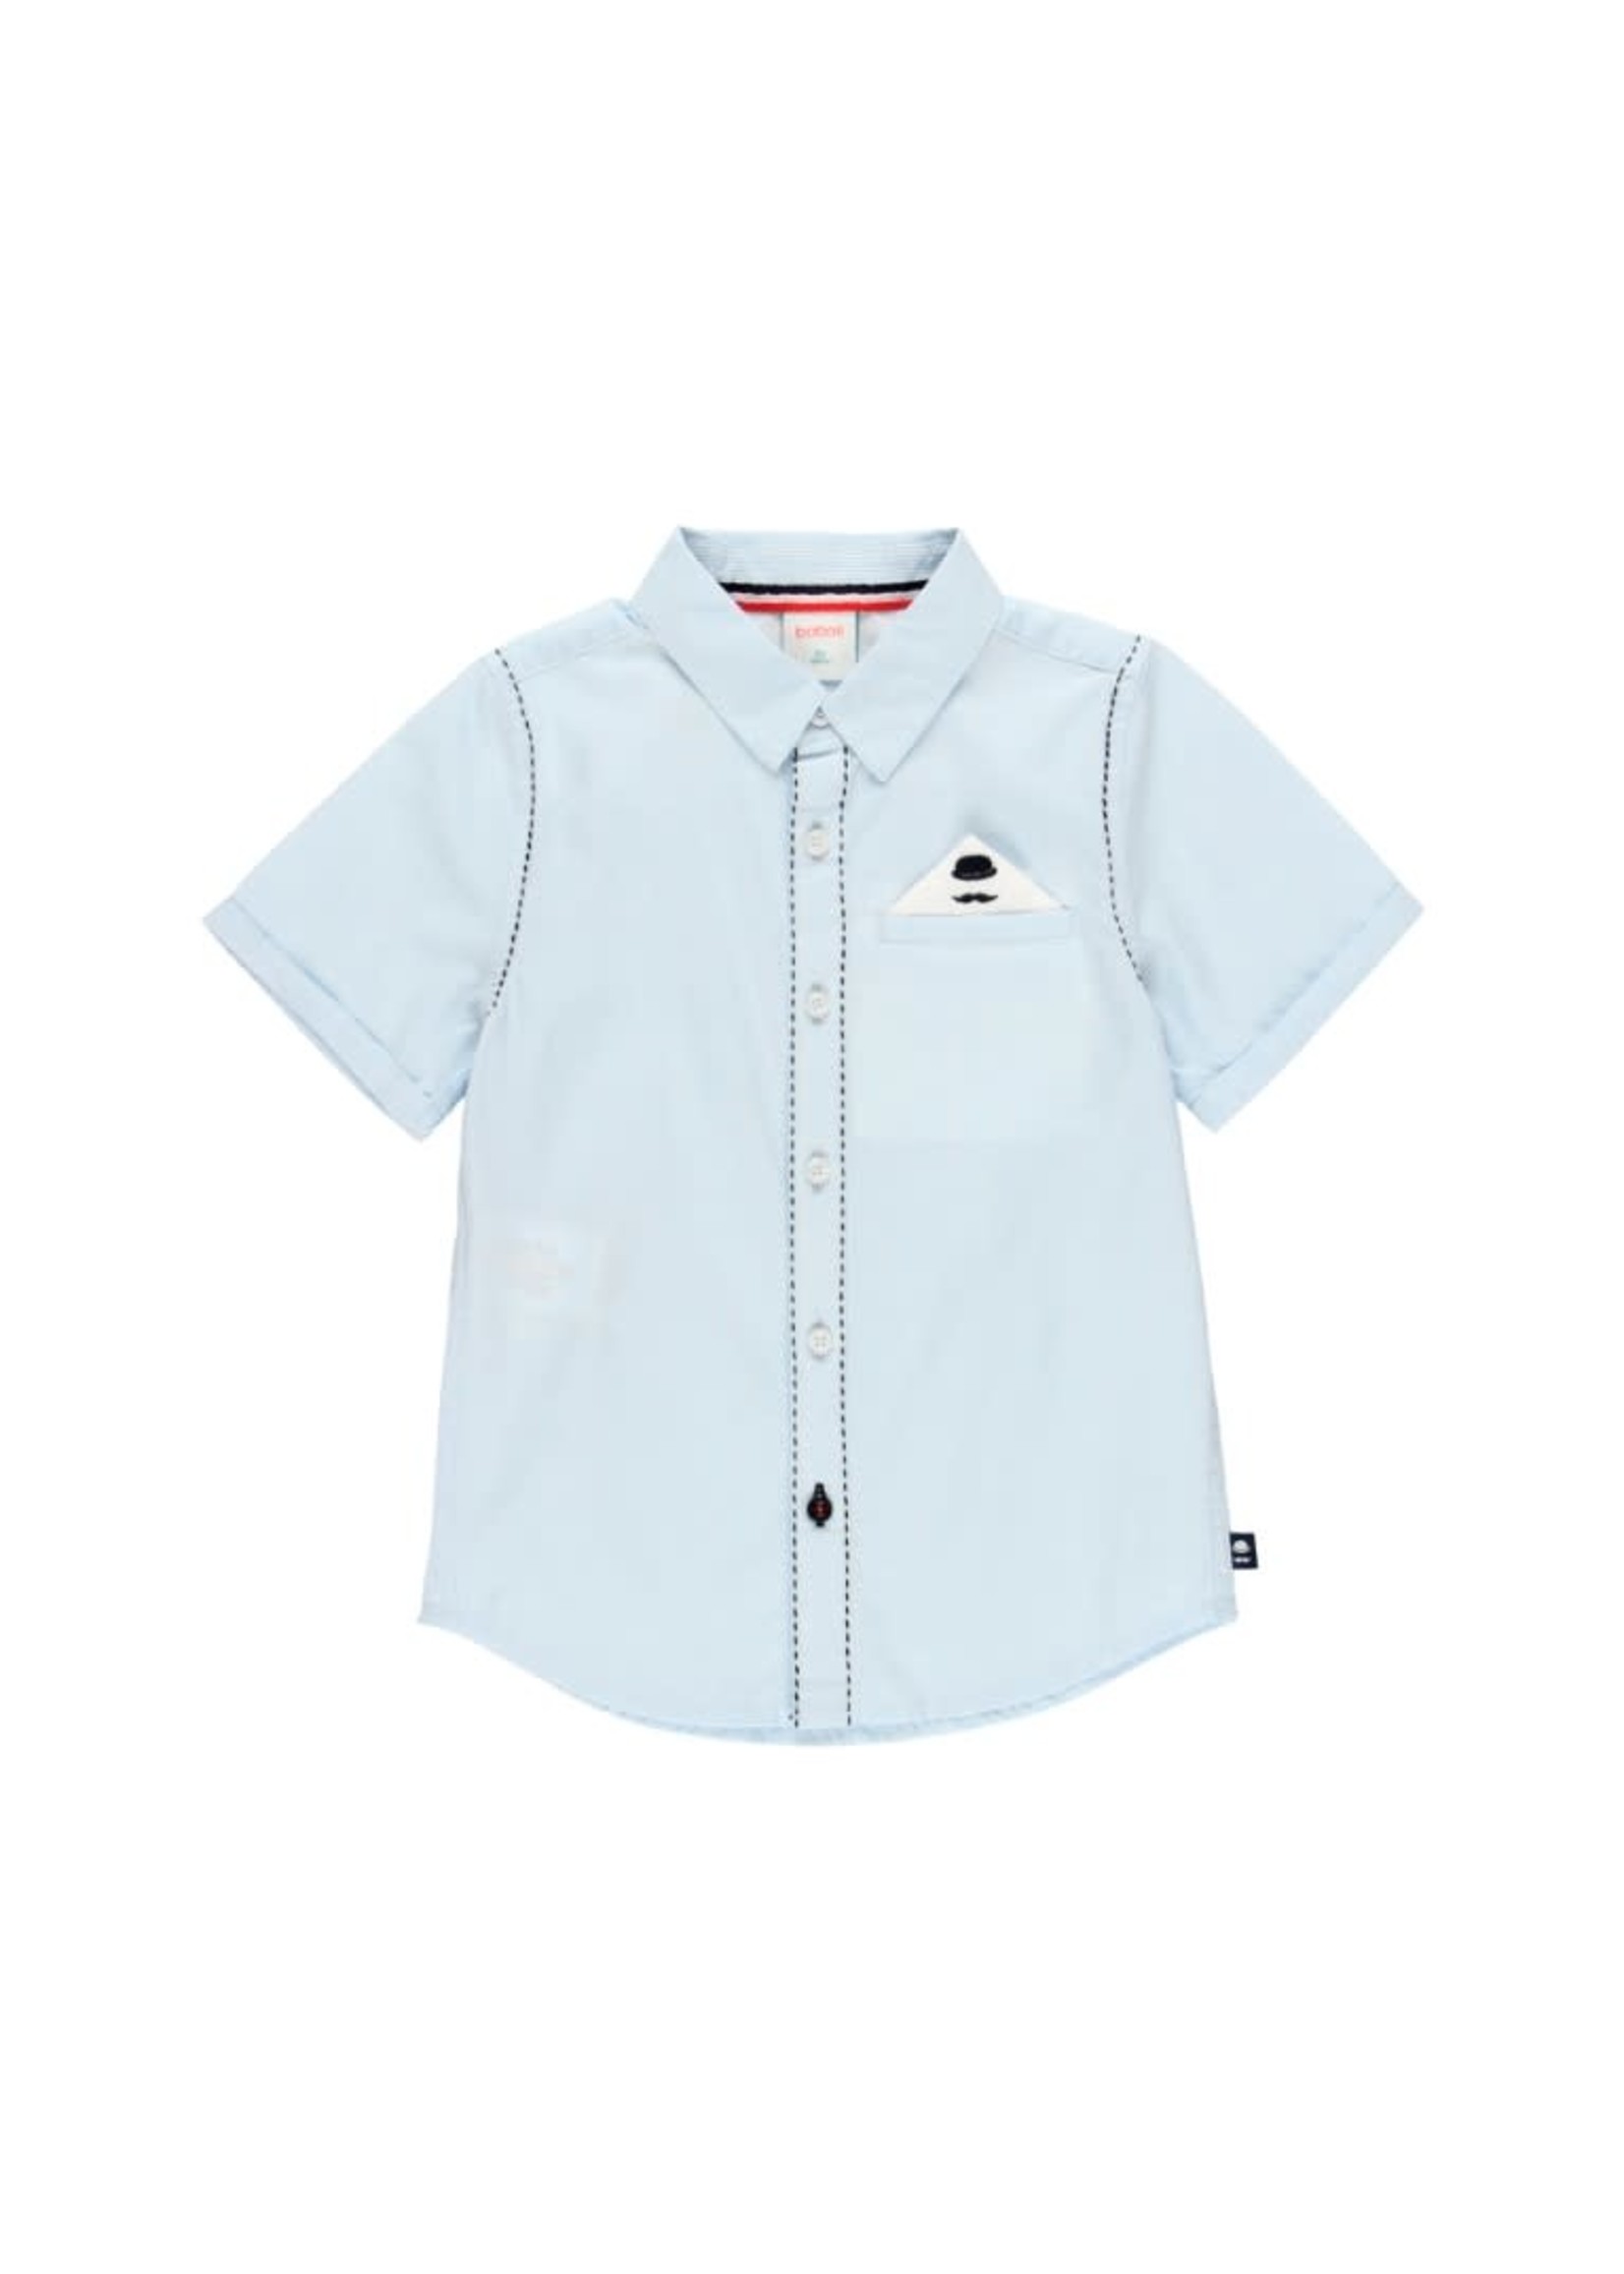 Boboli Boboli Shirt short sleeves for boy BLUE 734206